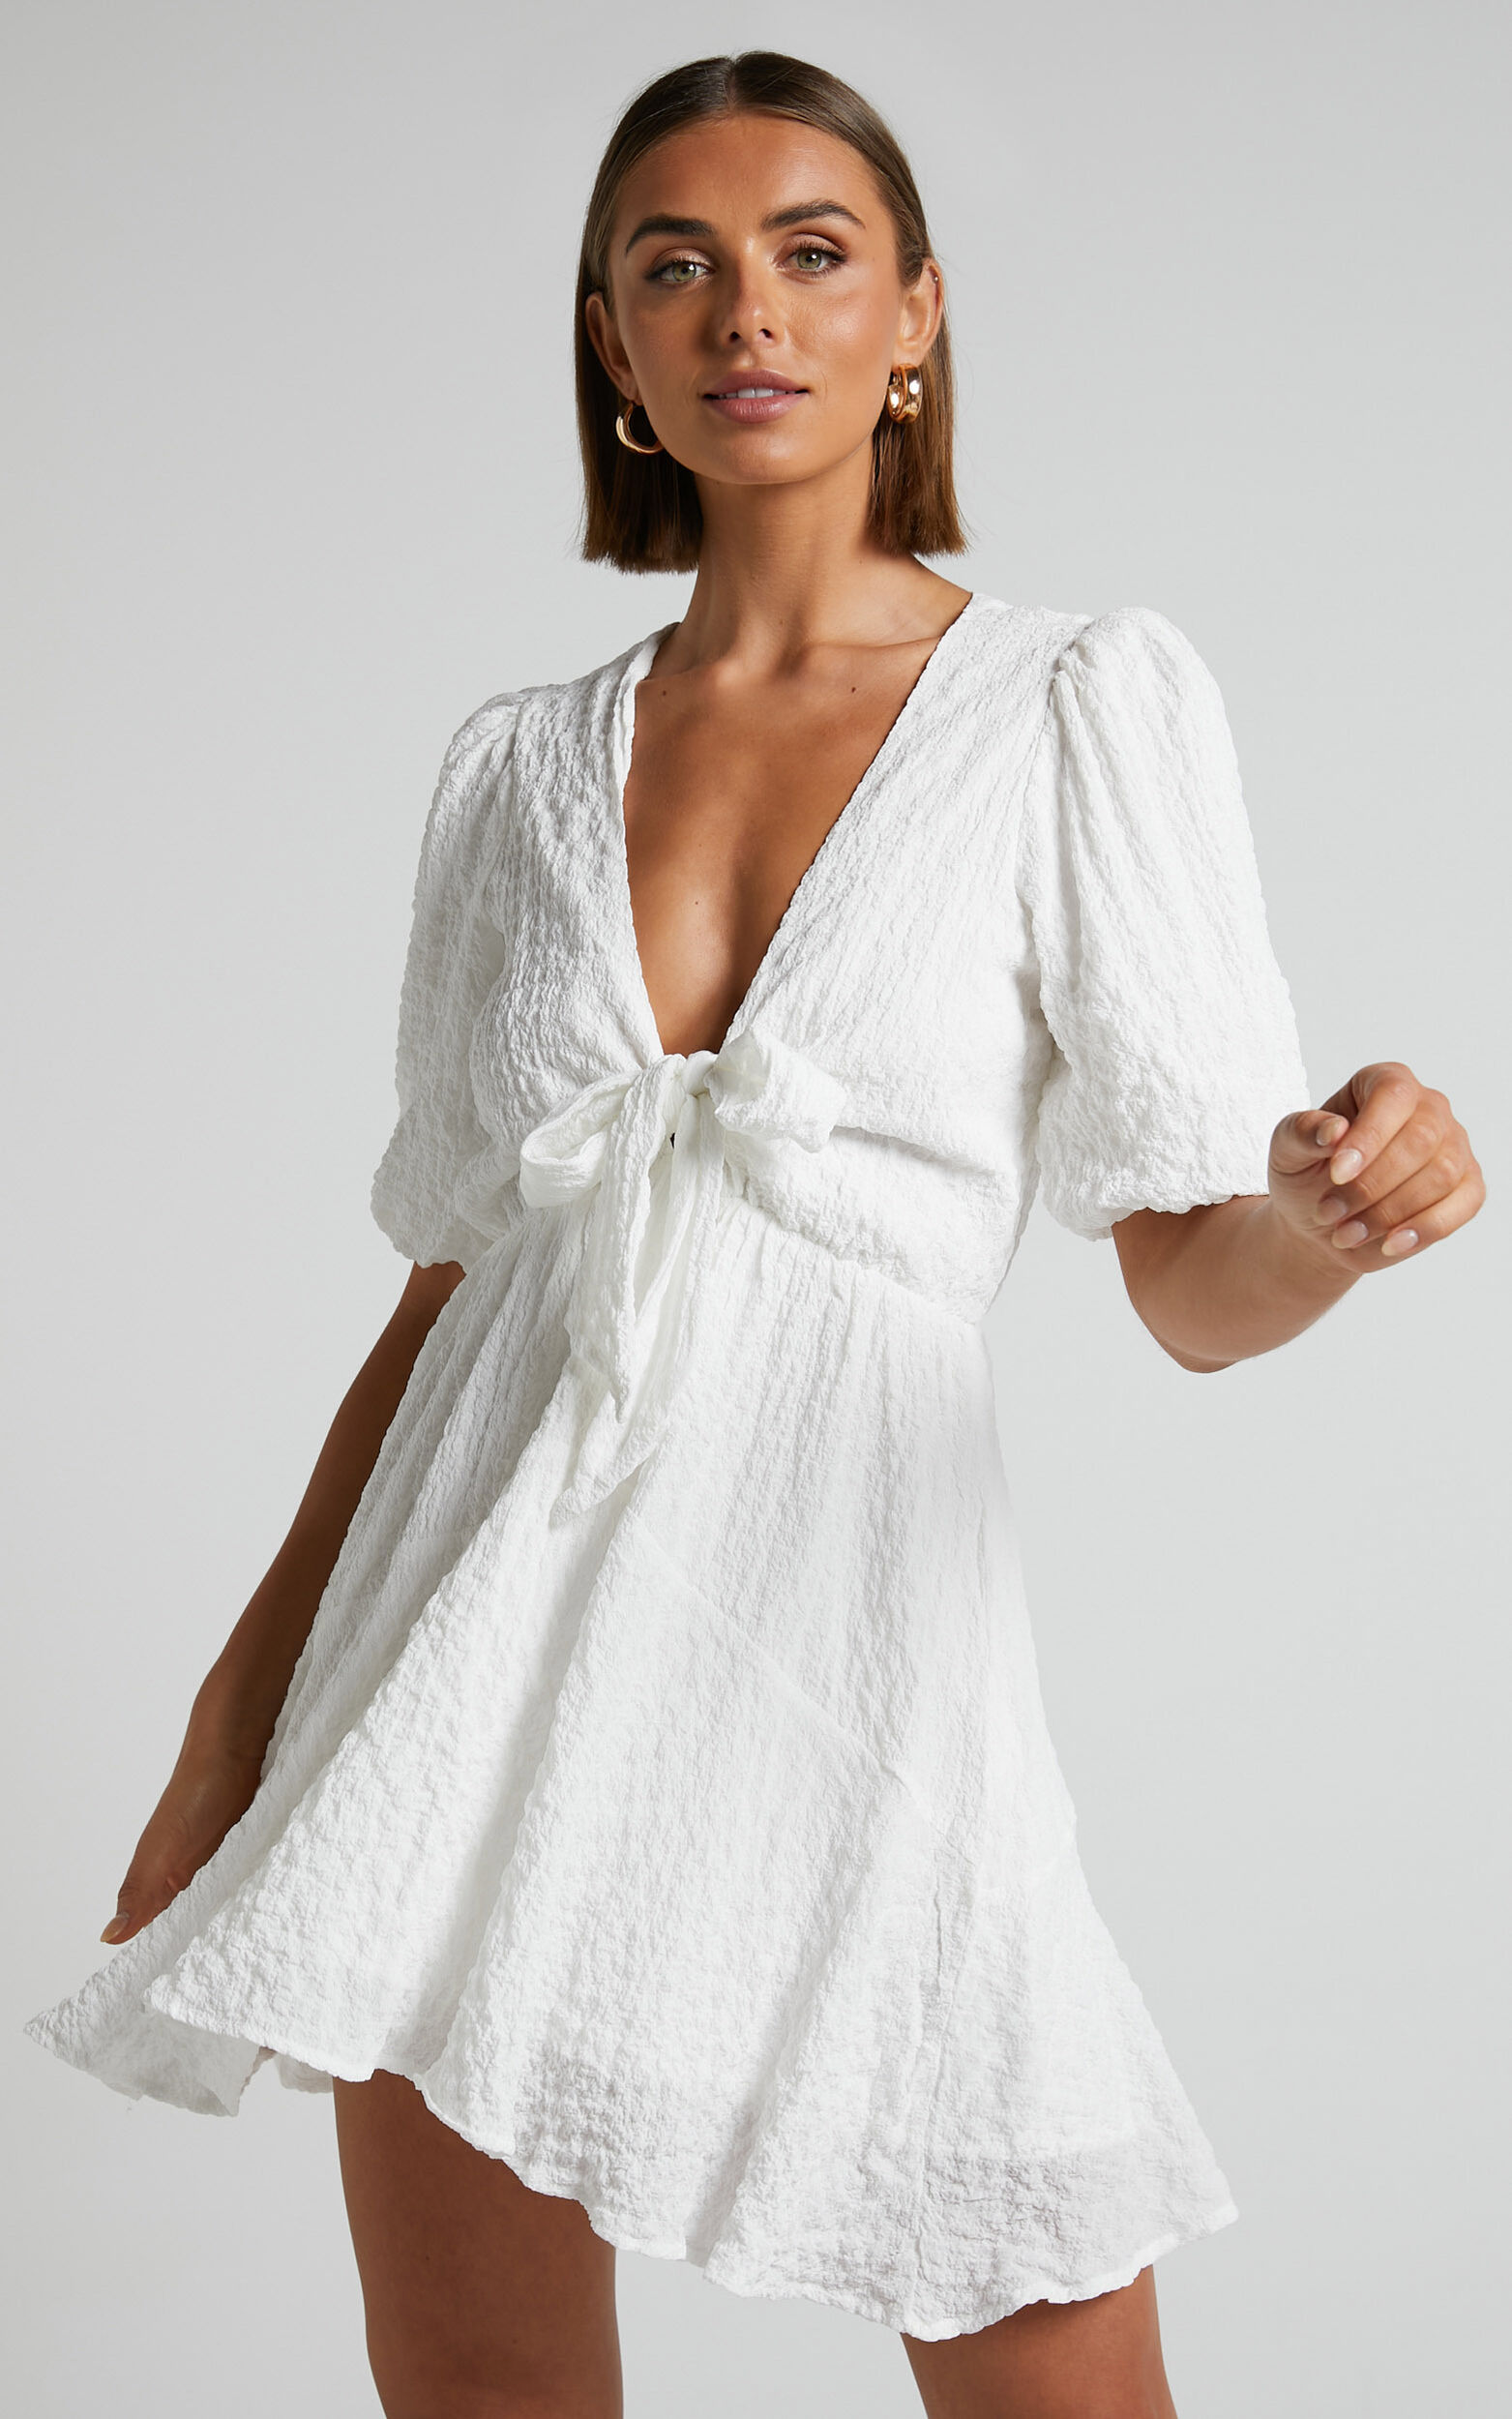 Rosalei Mini Dress - Puff Sleeve Tie Front Dress in White | Showpo